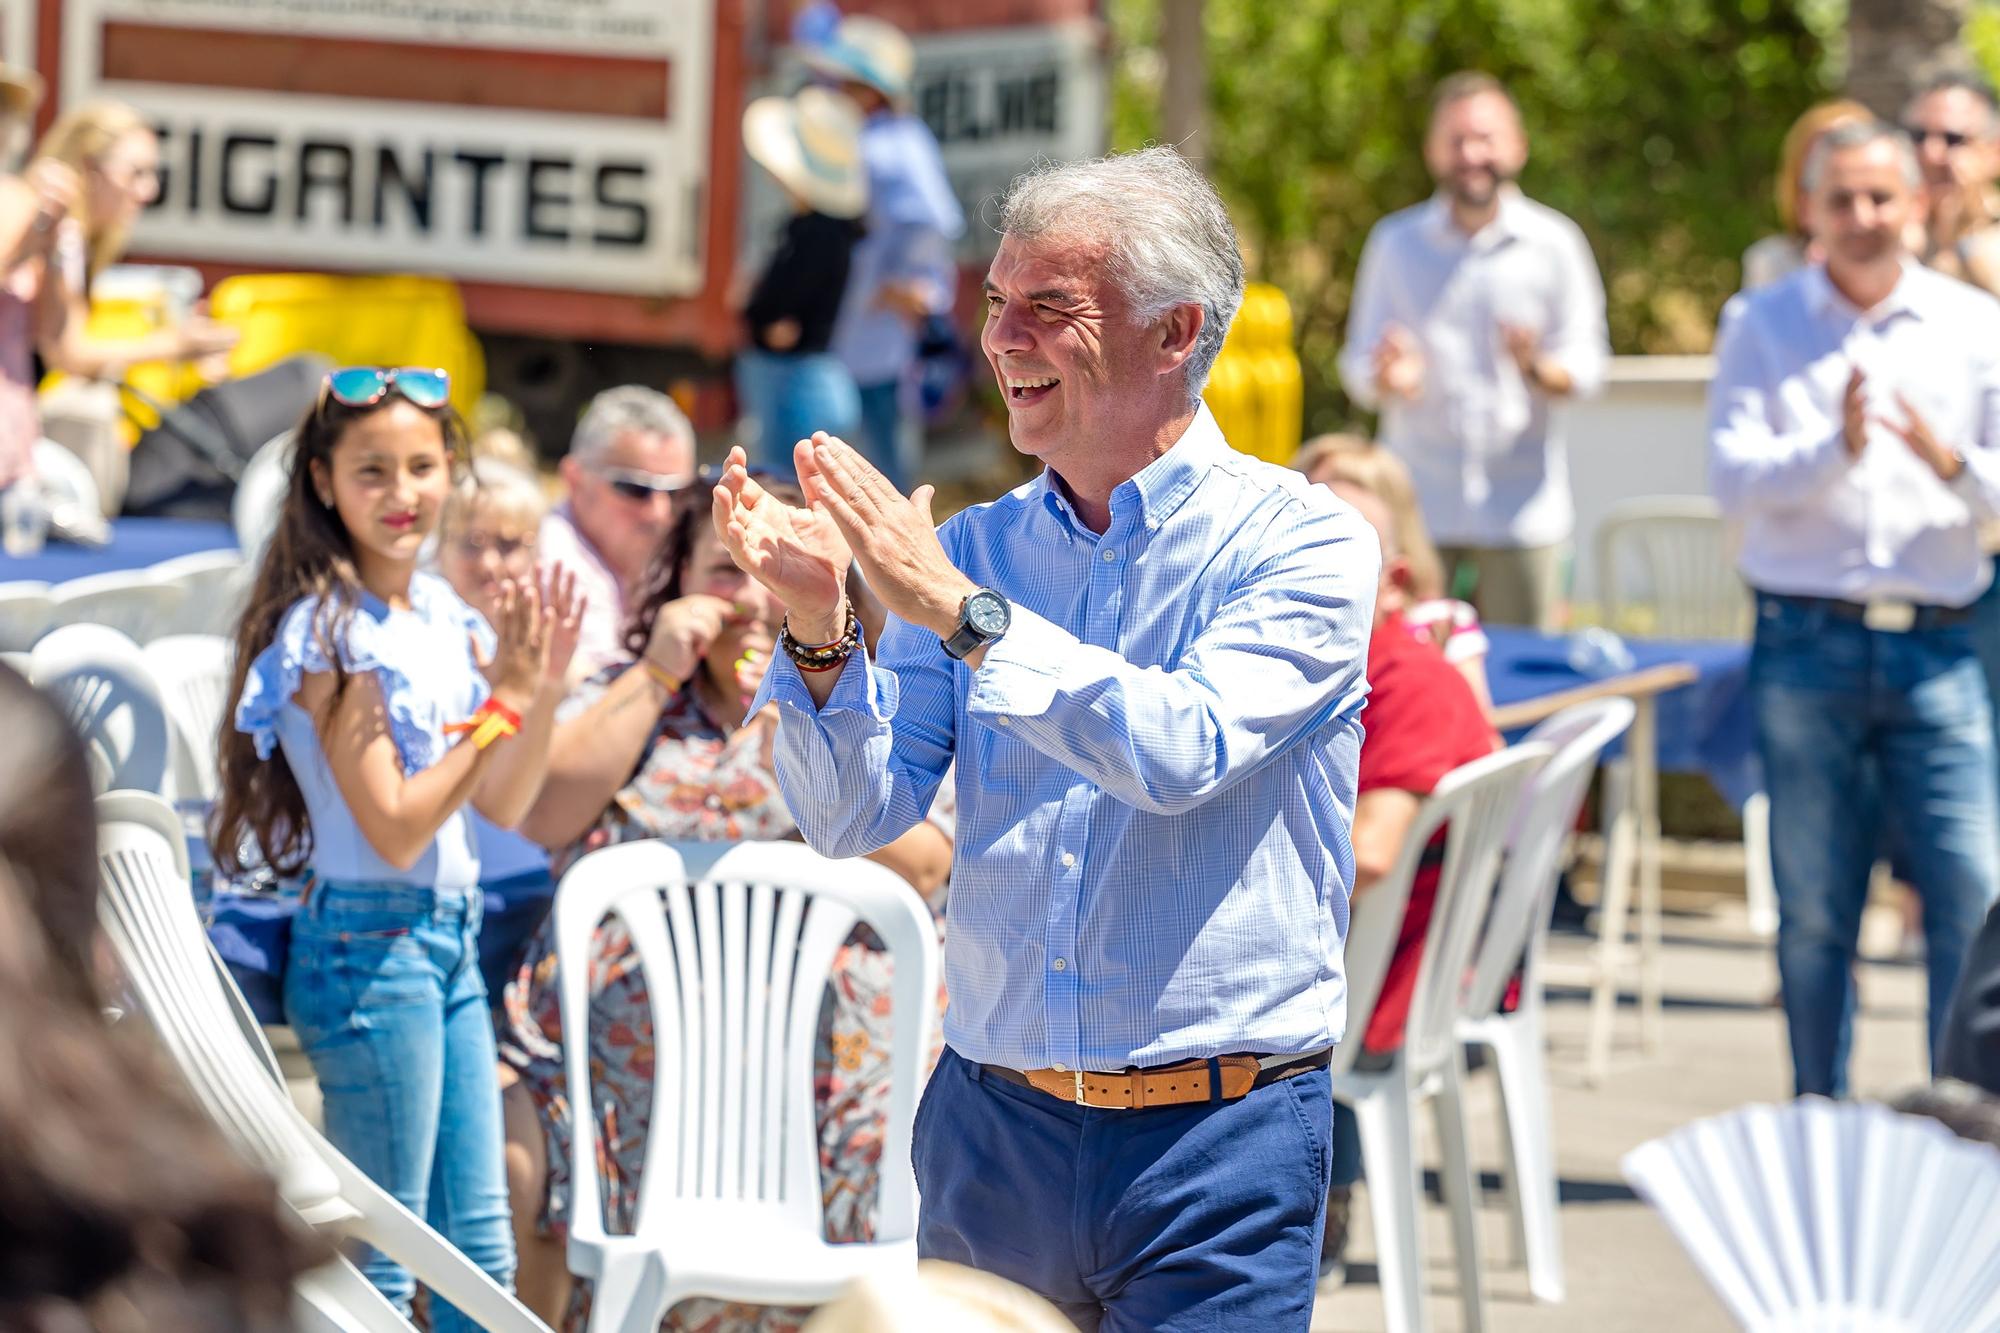 Presentación de la candidatura del Partido Popular de Toni Pérez en Benidorm